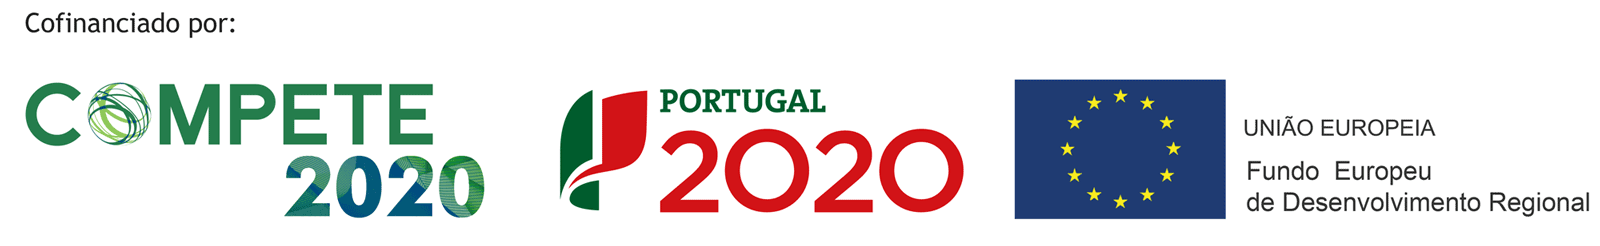 Compete 2020 - Portugal 2020 - Fundo Europeu de Desenvolvimento Regional